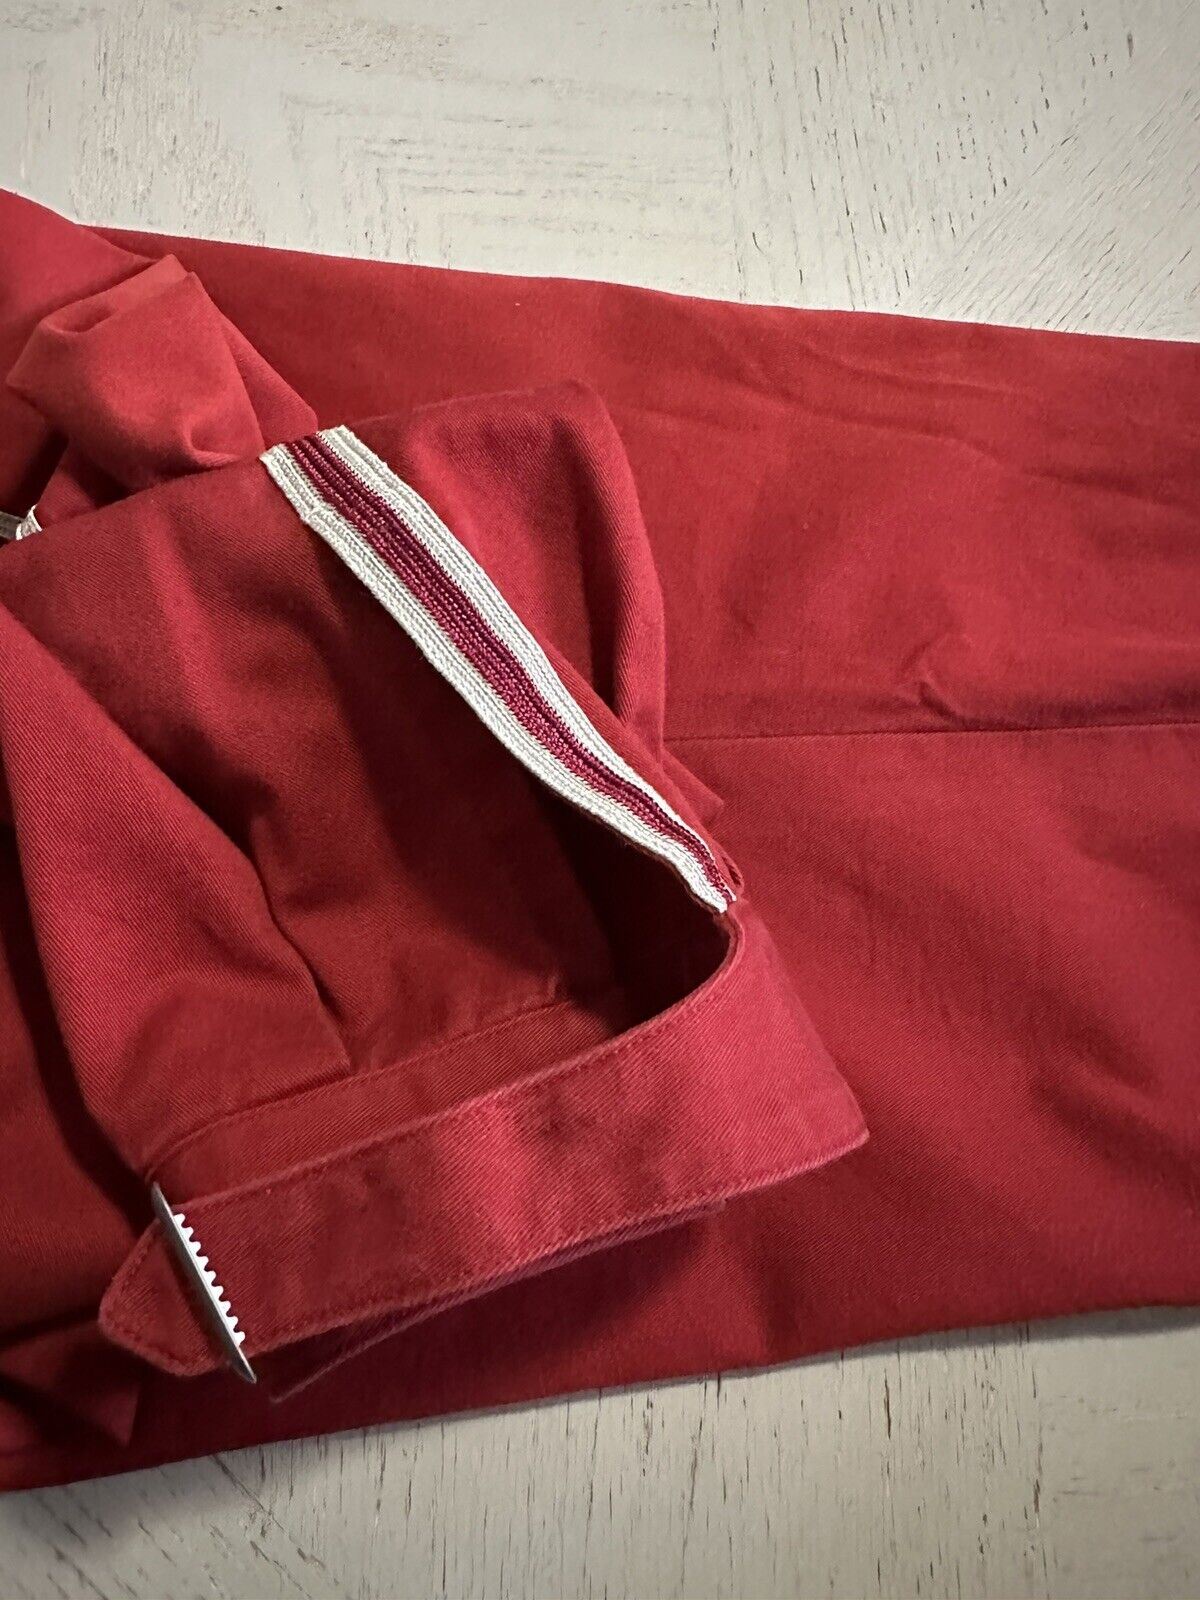 Новые мужские хлопковые спортивные брюки в стиле милитари от Gucci за 1300 долларов, красные, 32 США/48 ЕС